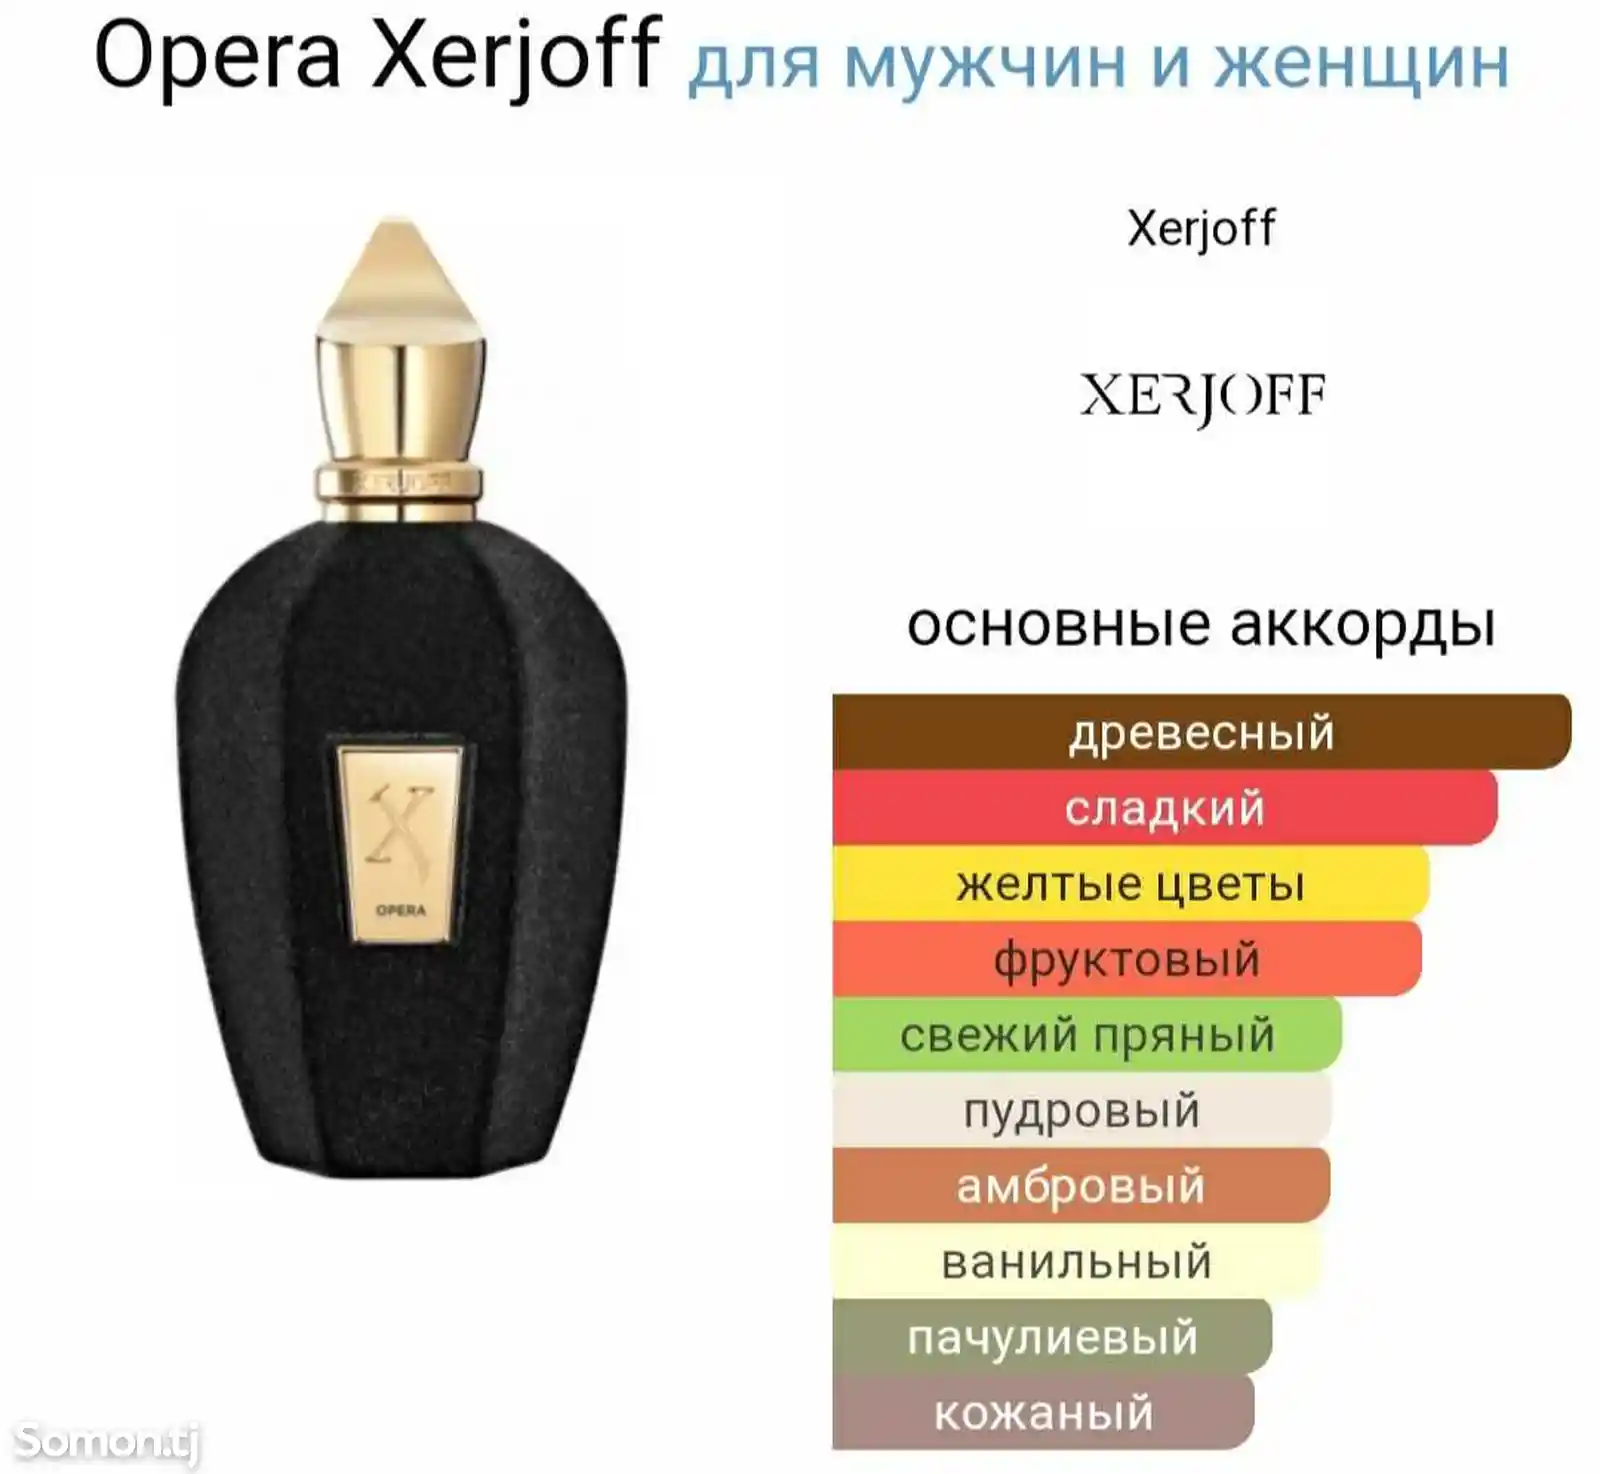 Парфюм Xerjoff Opera